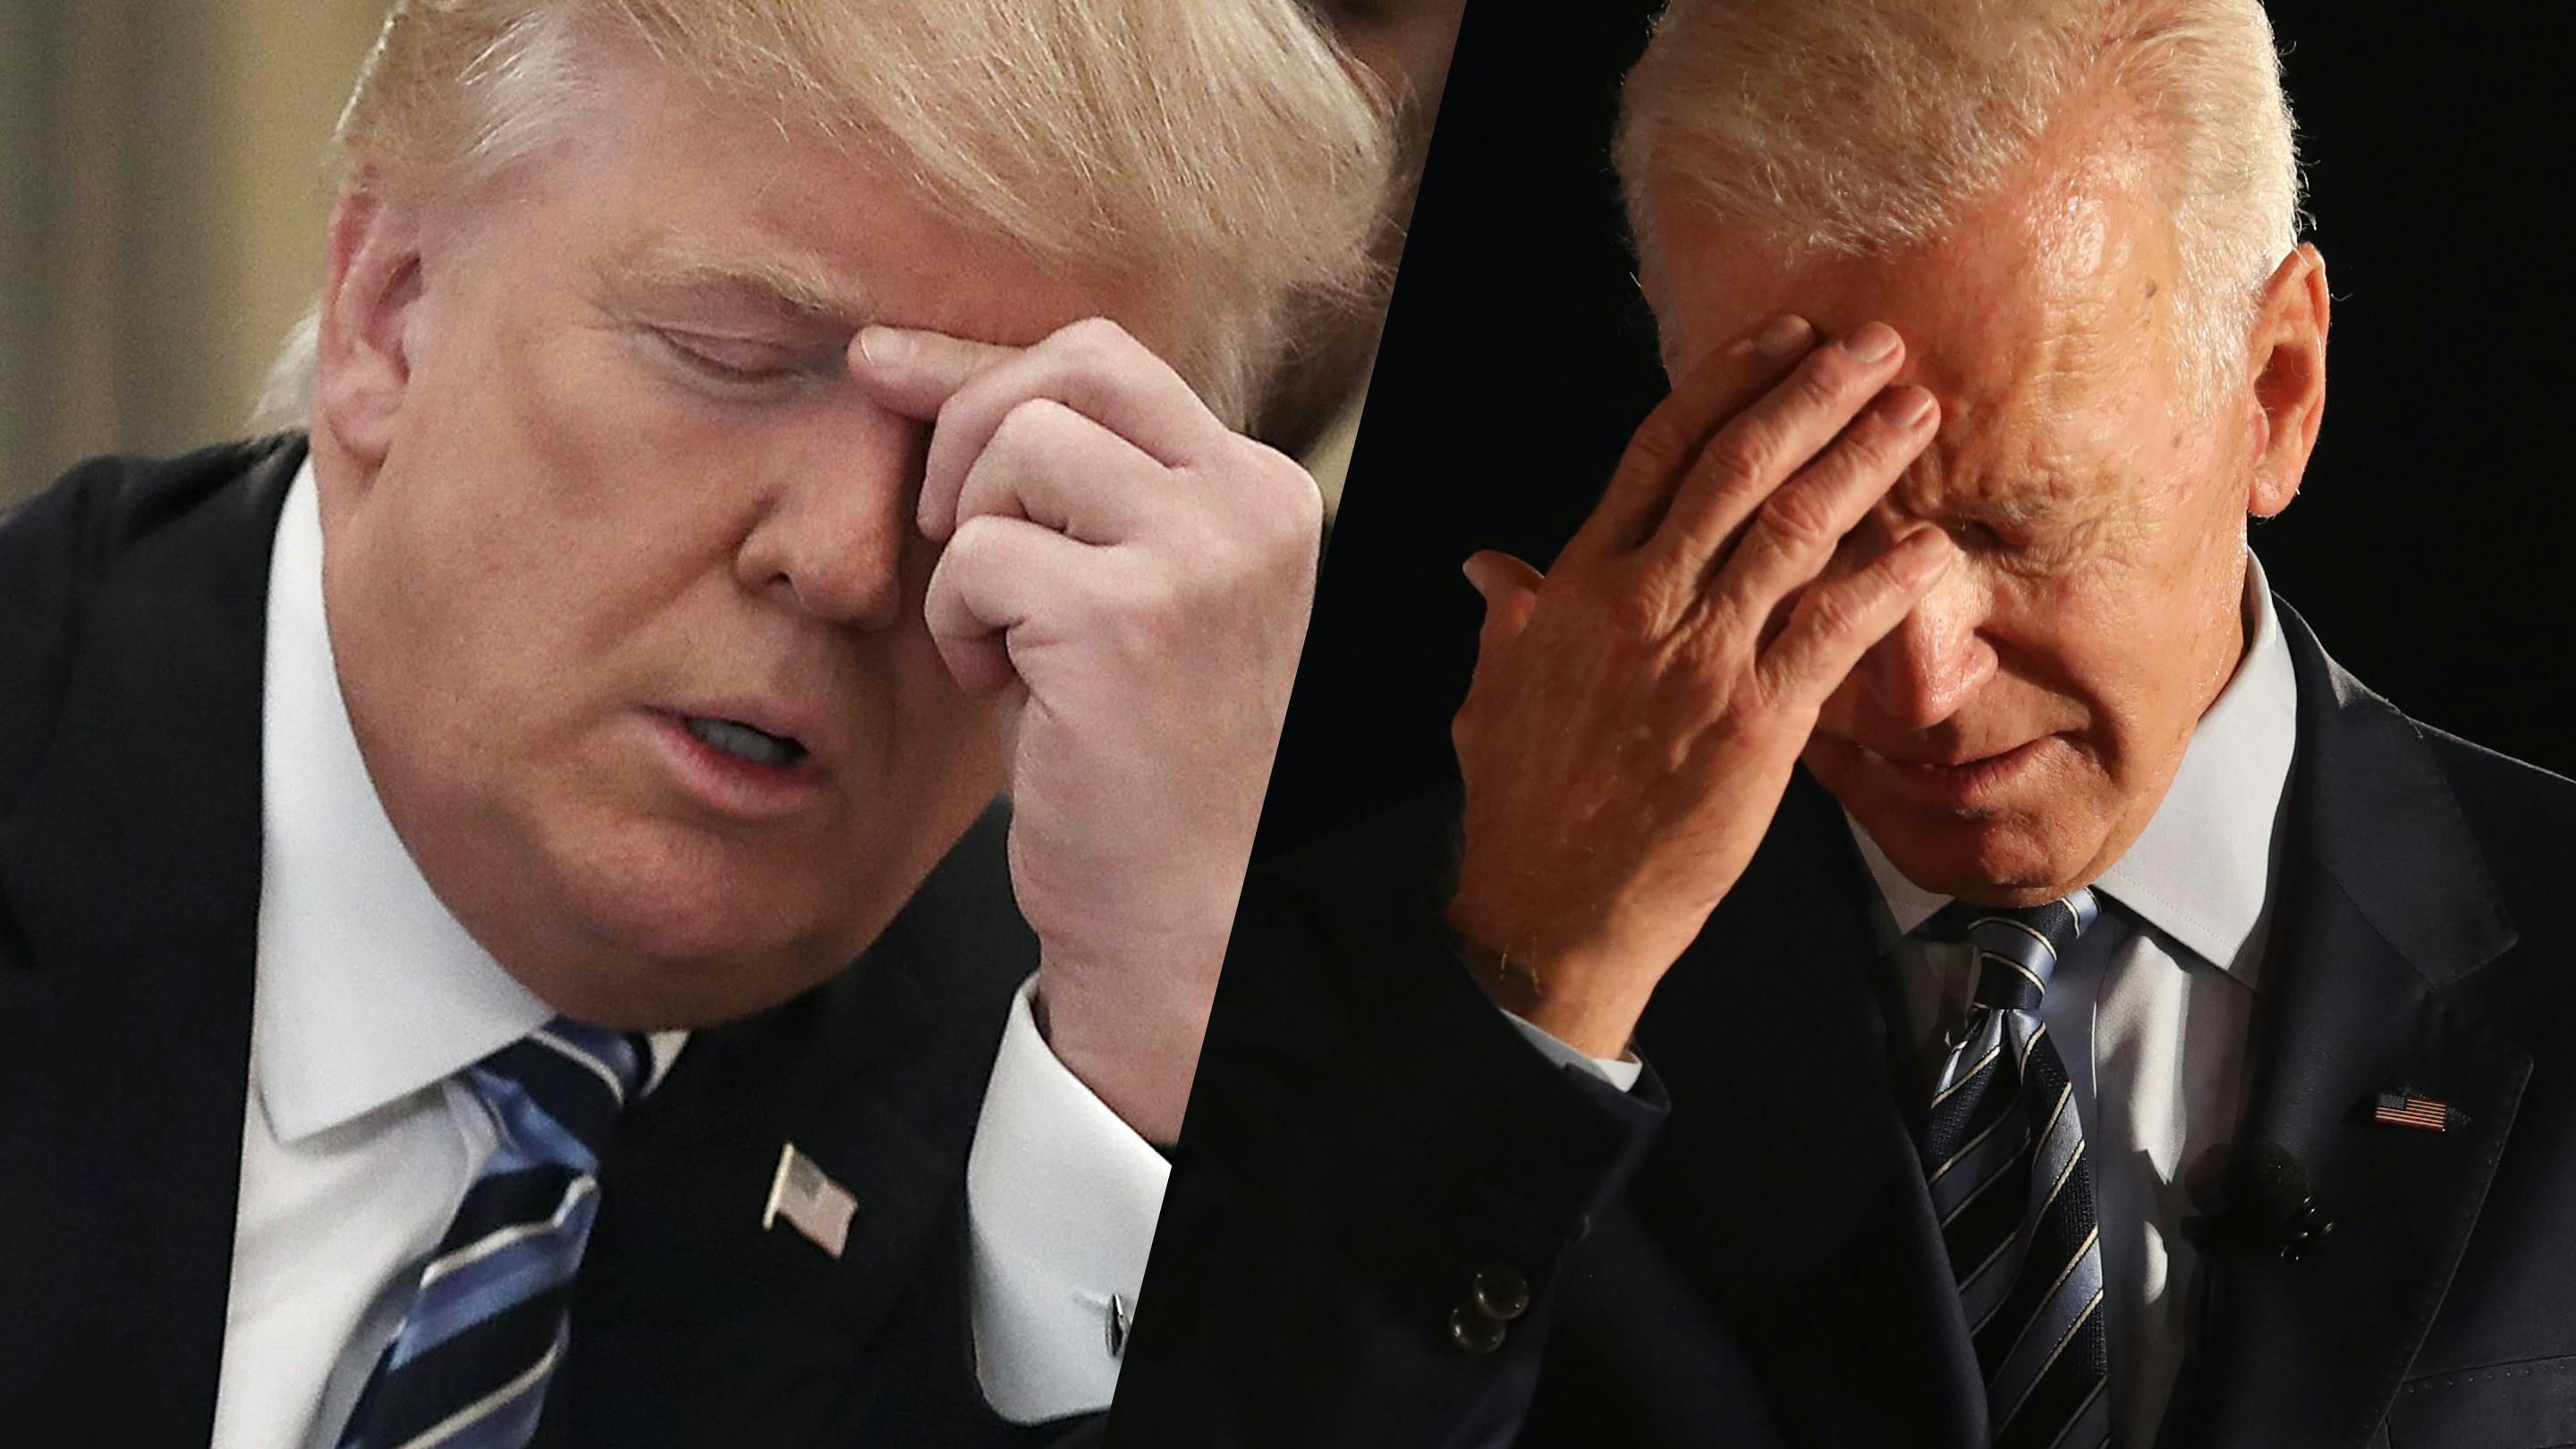 Links im Bild sehen wir Trump, der sich an den Kopf fasst und rechts tut Biden dasselbe. 